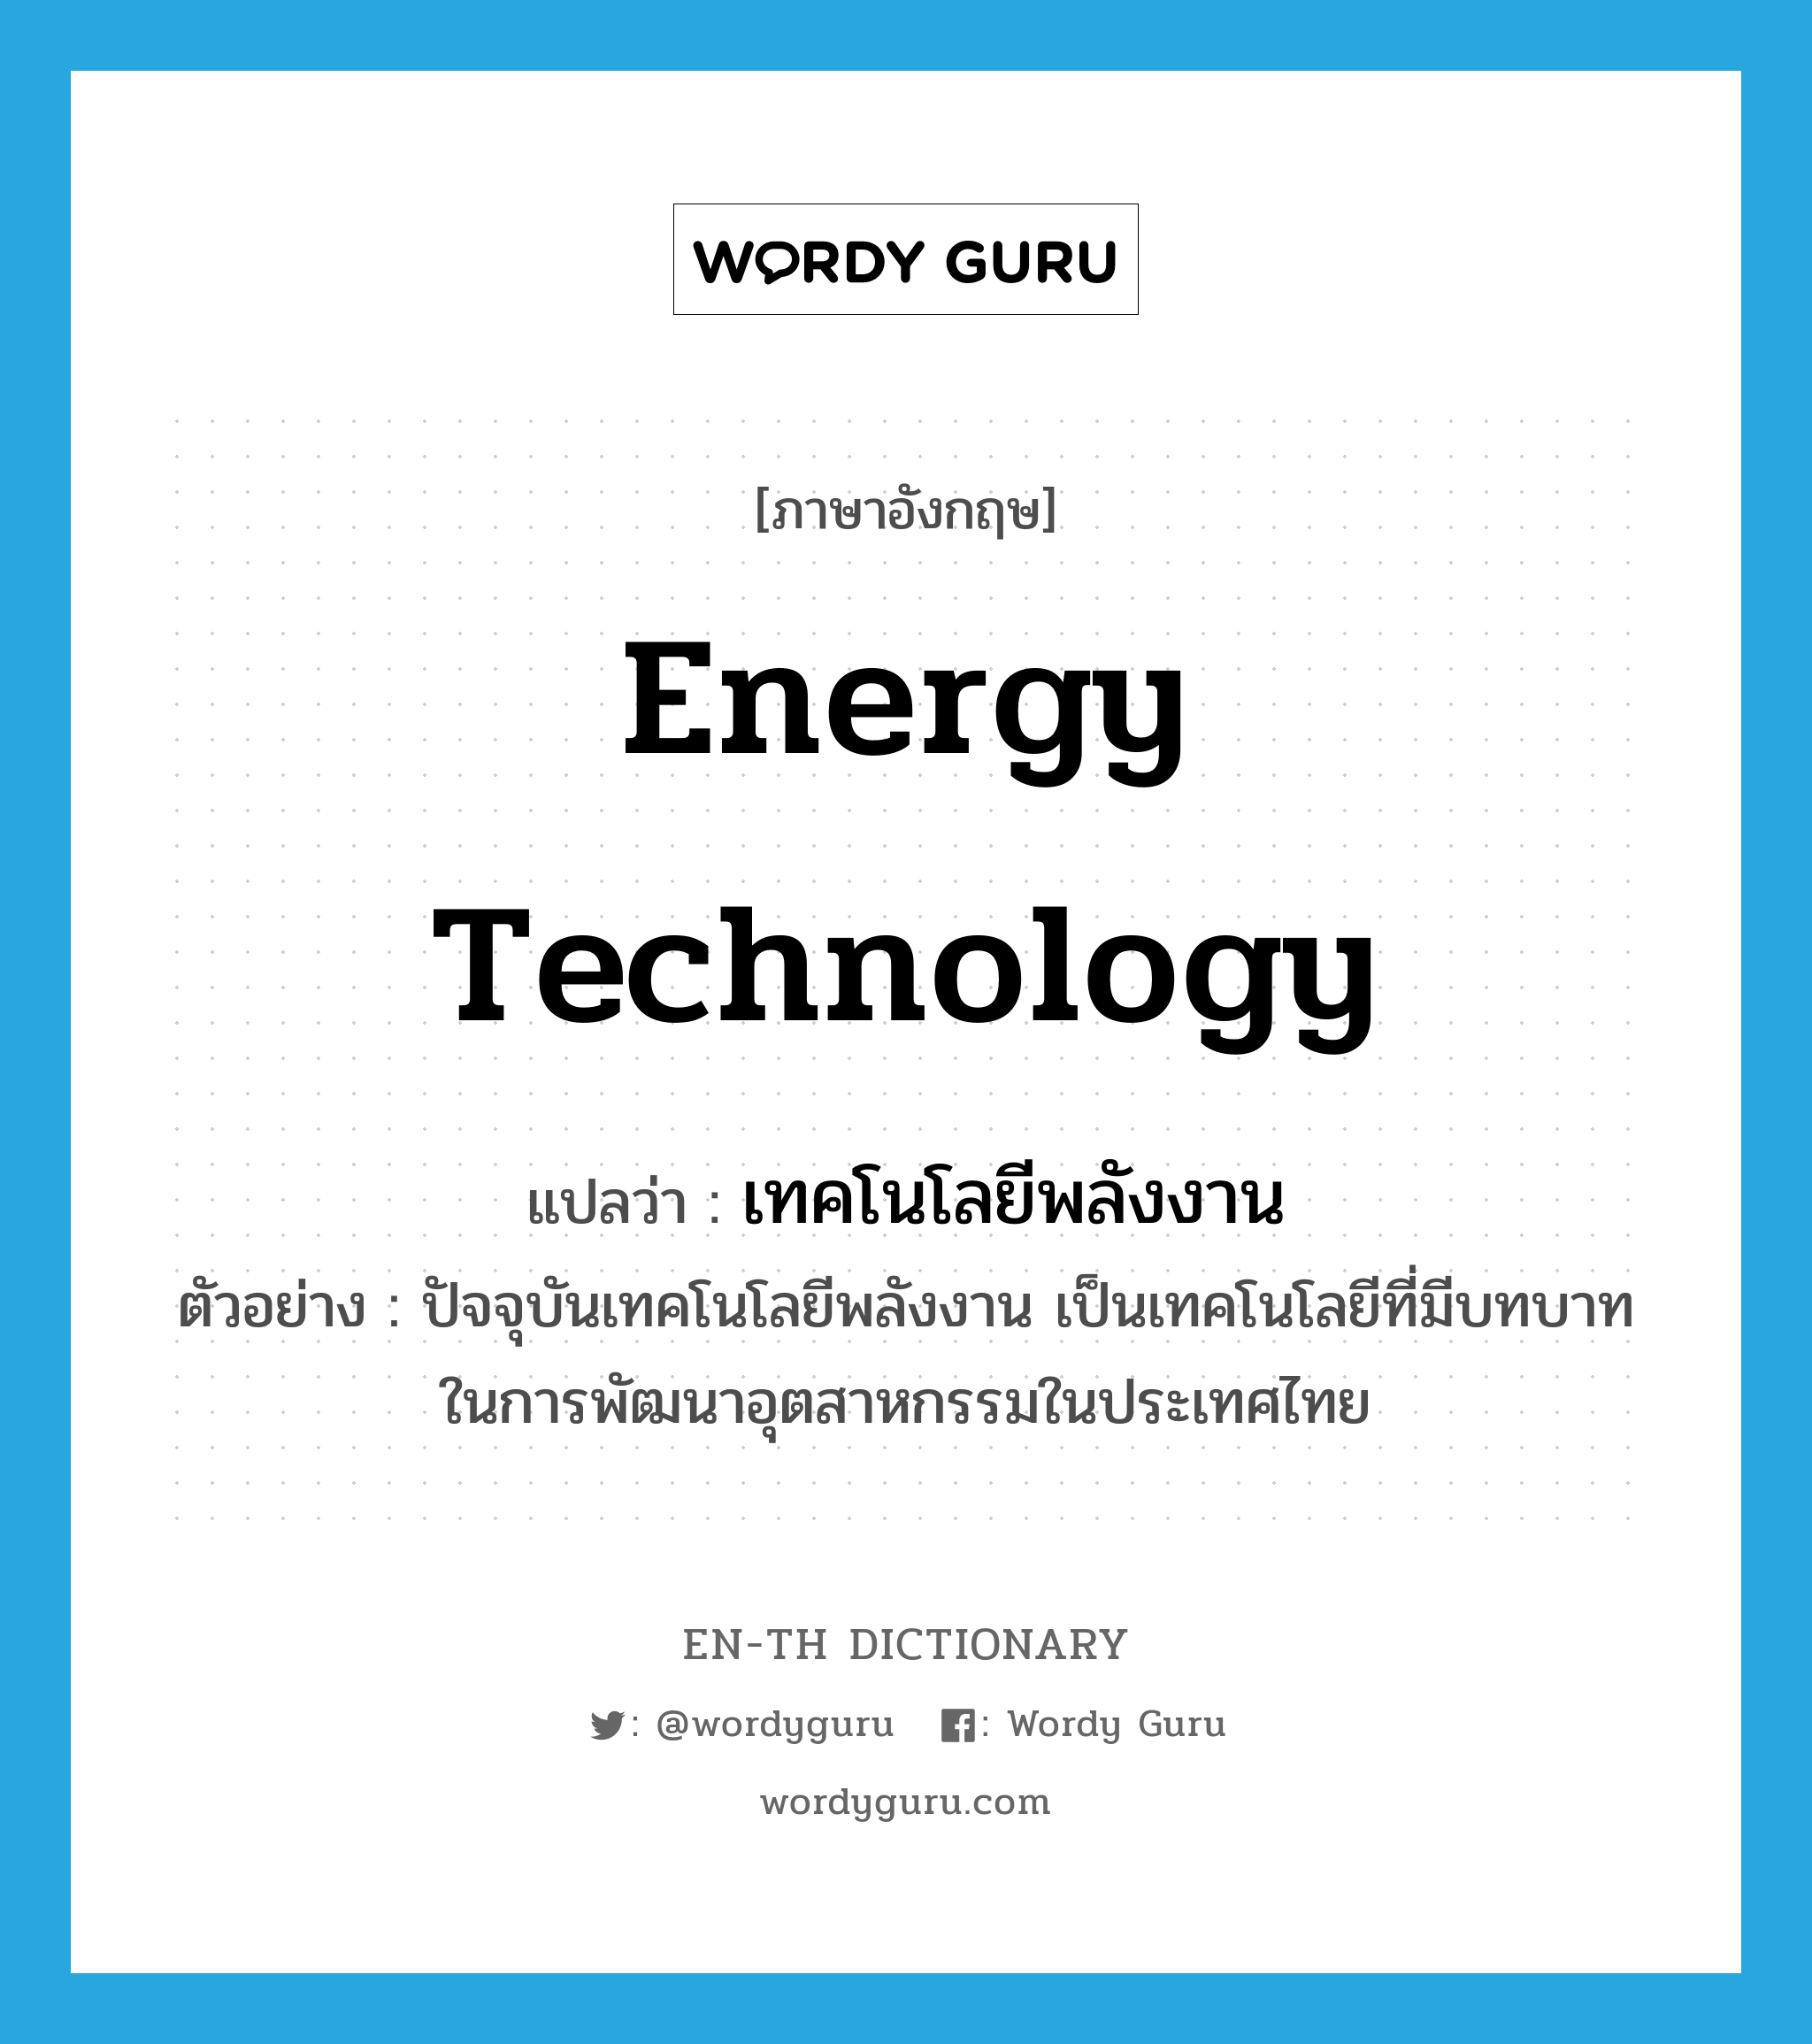 energy technology แปลว่า?, คำศัพท์ภาษาอังกฤษ energy technology แปลว่า เทคโนโลยีพลังงาน ประเภท N ตัวอย่าง ปัจจุบันเทคโนโลยีพลังงาน เป็นเทคโนโลยีที่มีบทบาทในการพัฒนาอุตสาหกรรมในประเทศไทย หมวด N